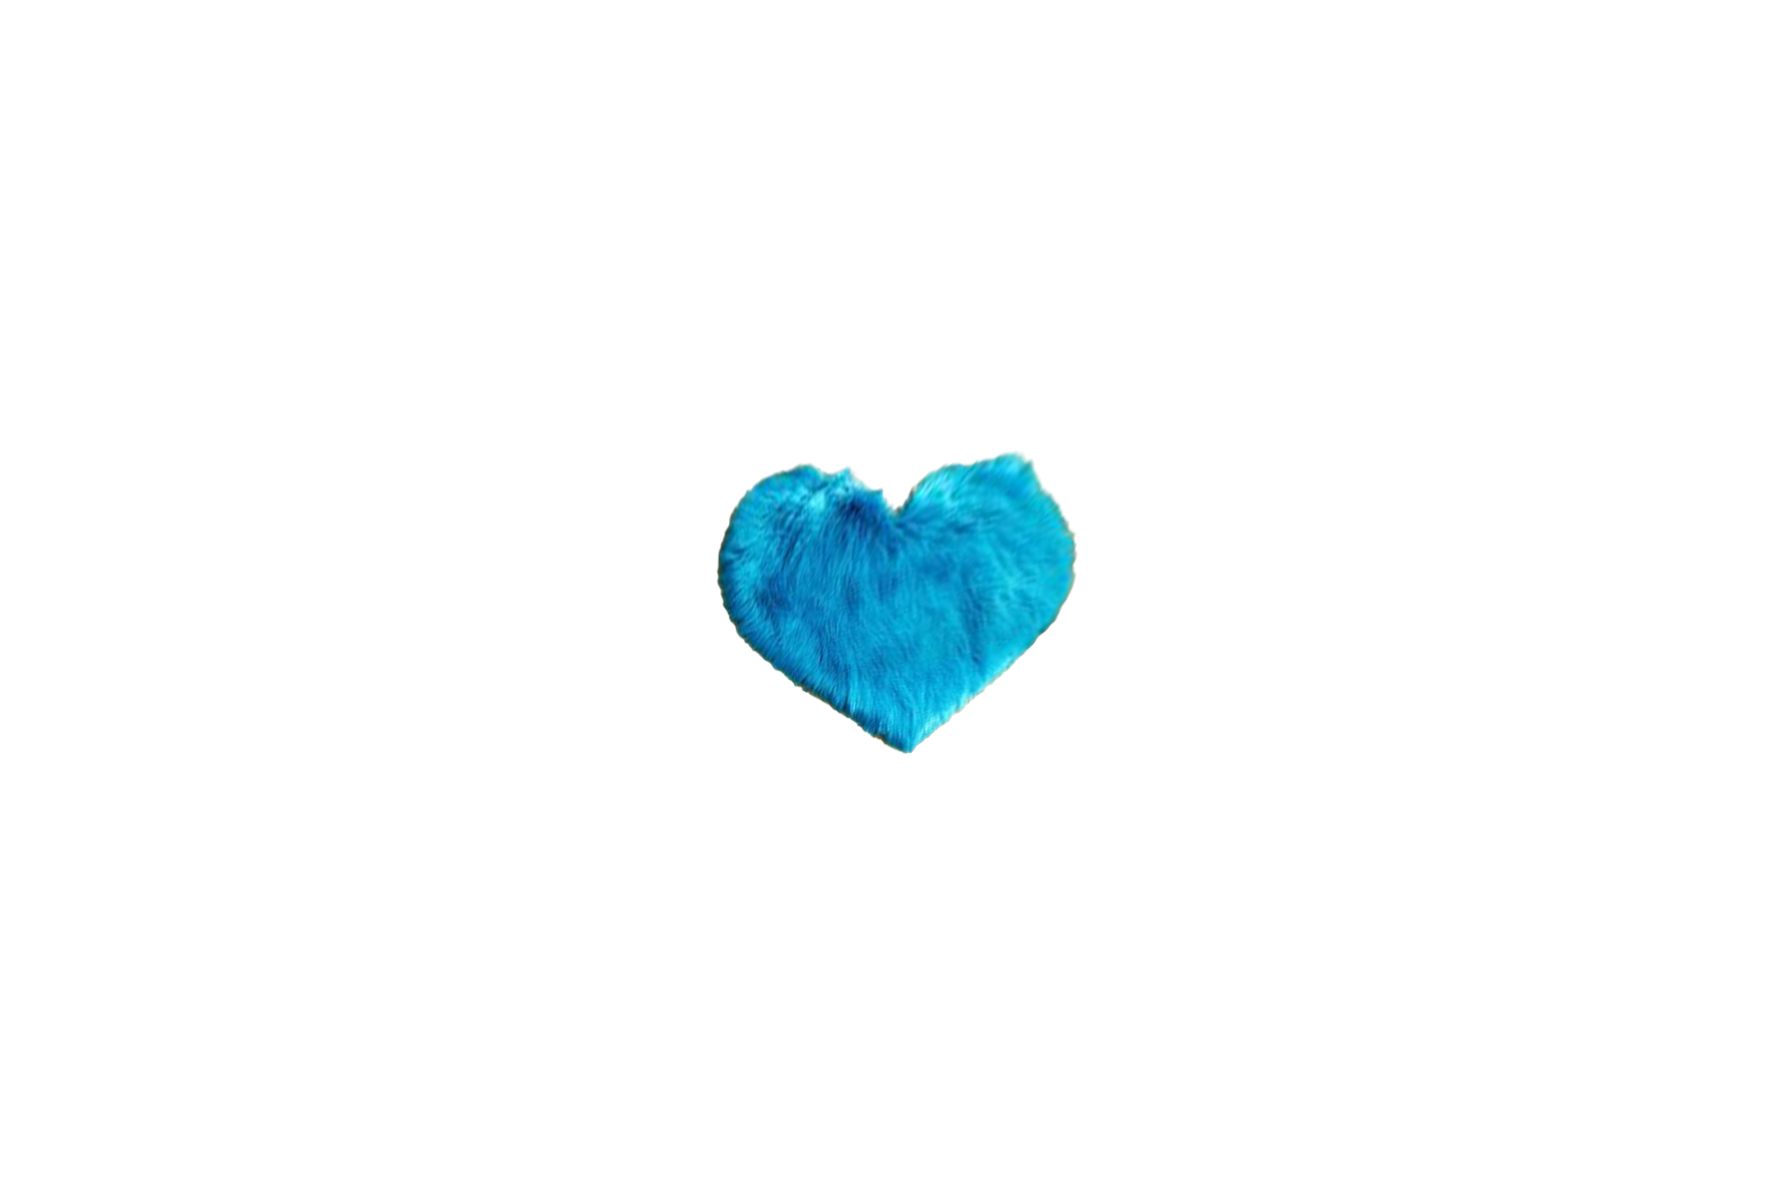 Vloerkleed | Hoogpolig blauw in hartvorm L60xB50